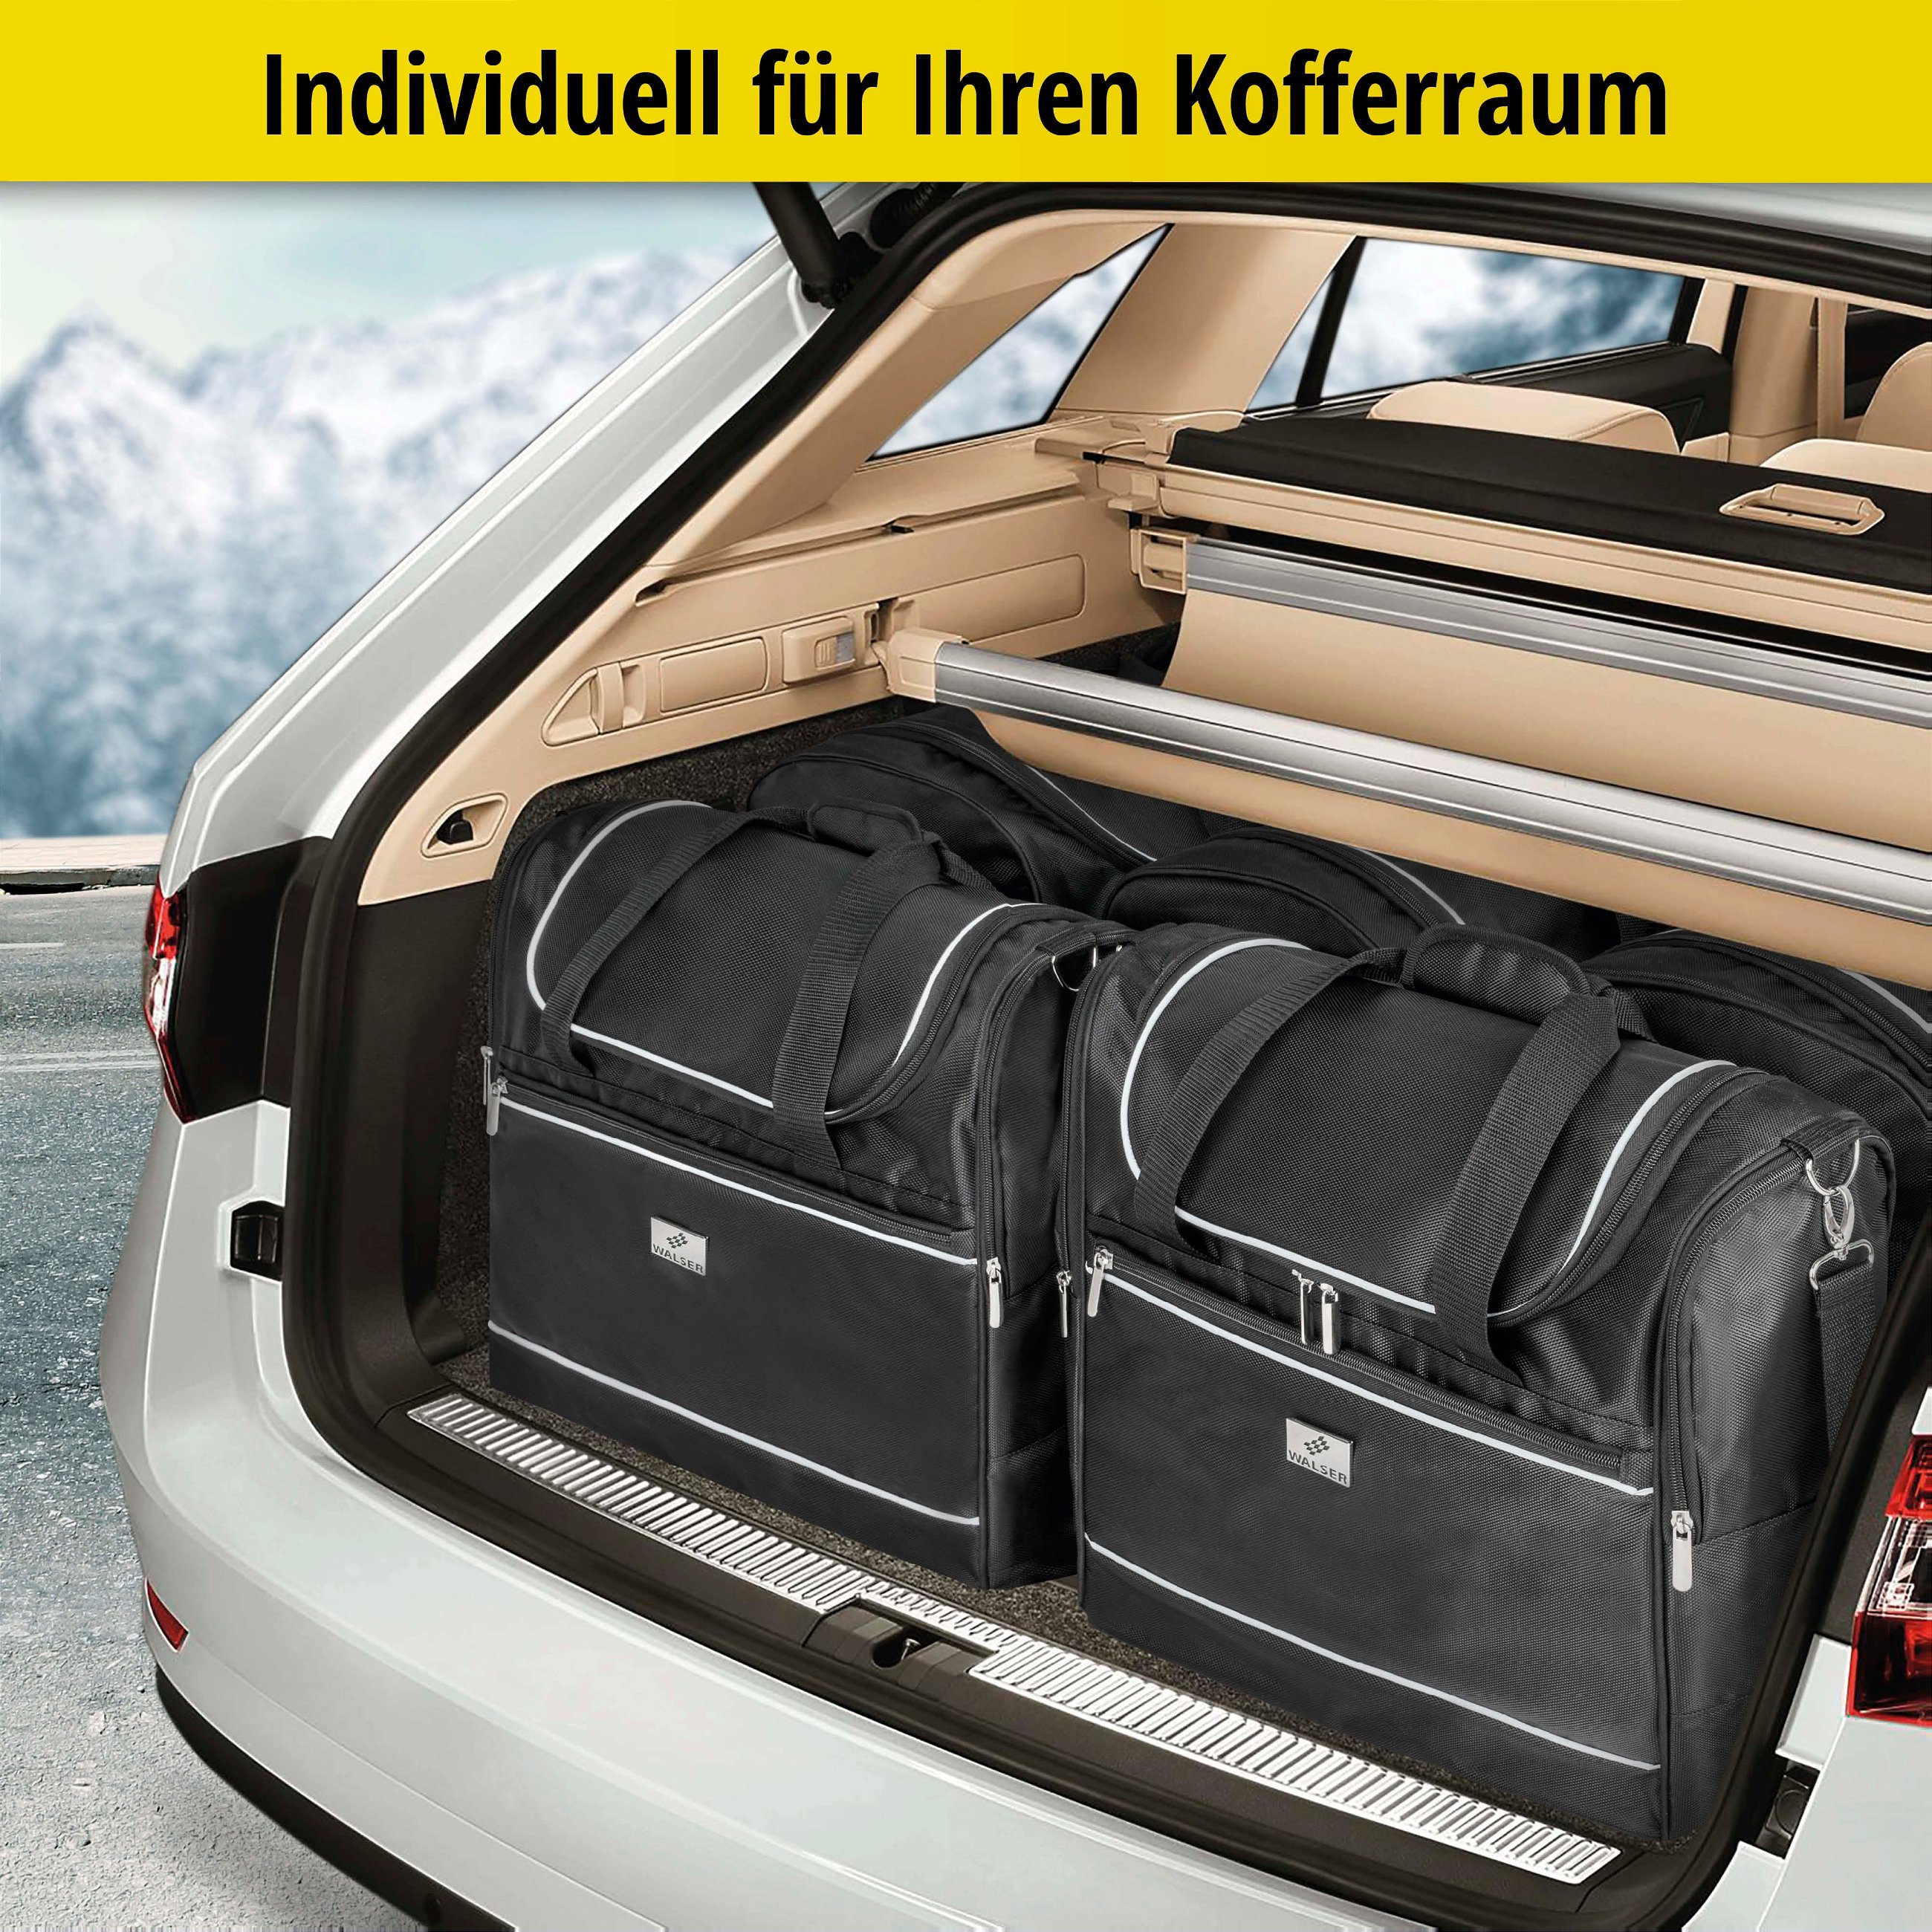 Carbags Reisetaschenset für Audi A6 Allroad C7 schwarz